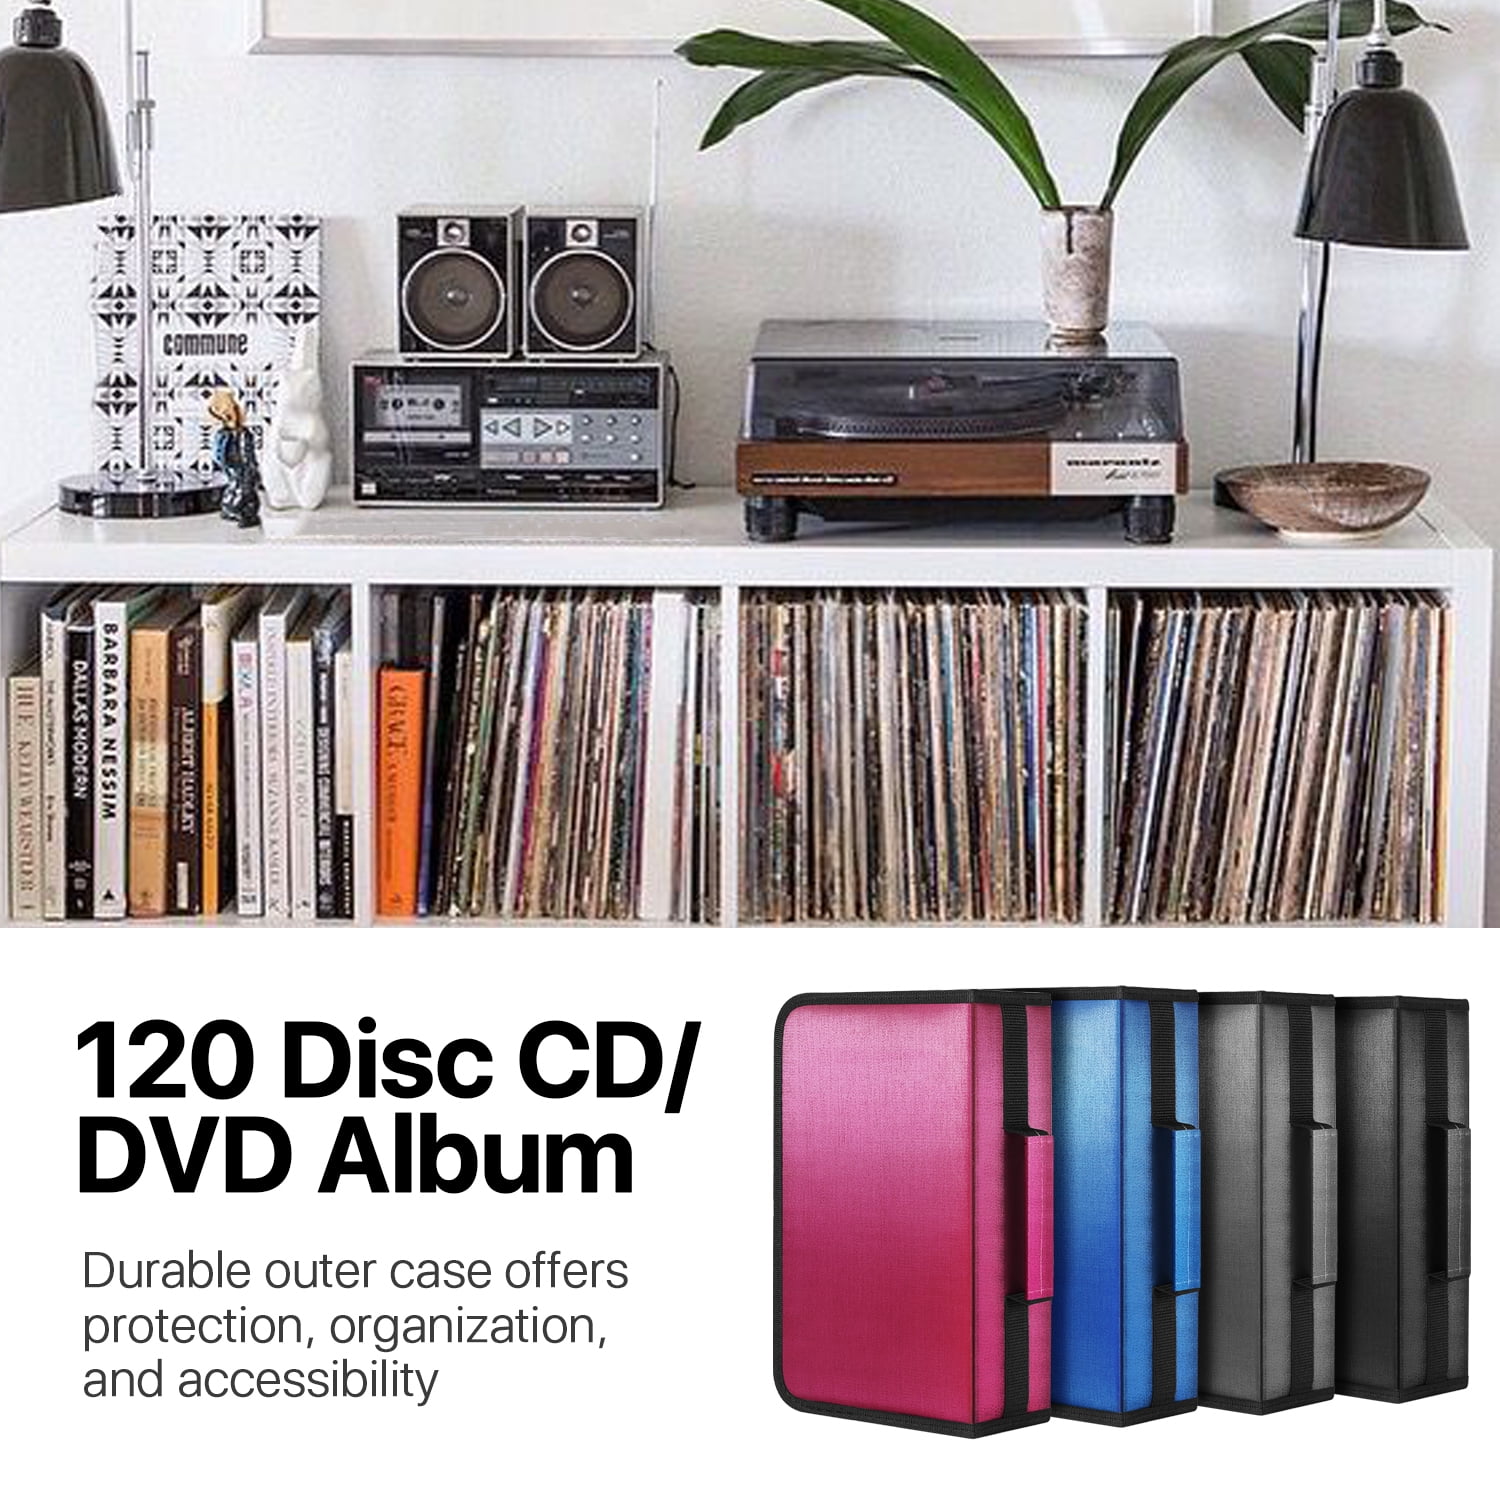 Accessoires, présentoirs rangements, réparations cd dvd, contact RDM VIDEO